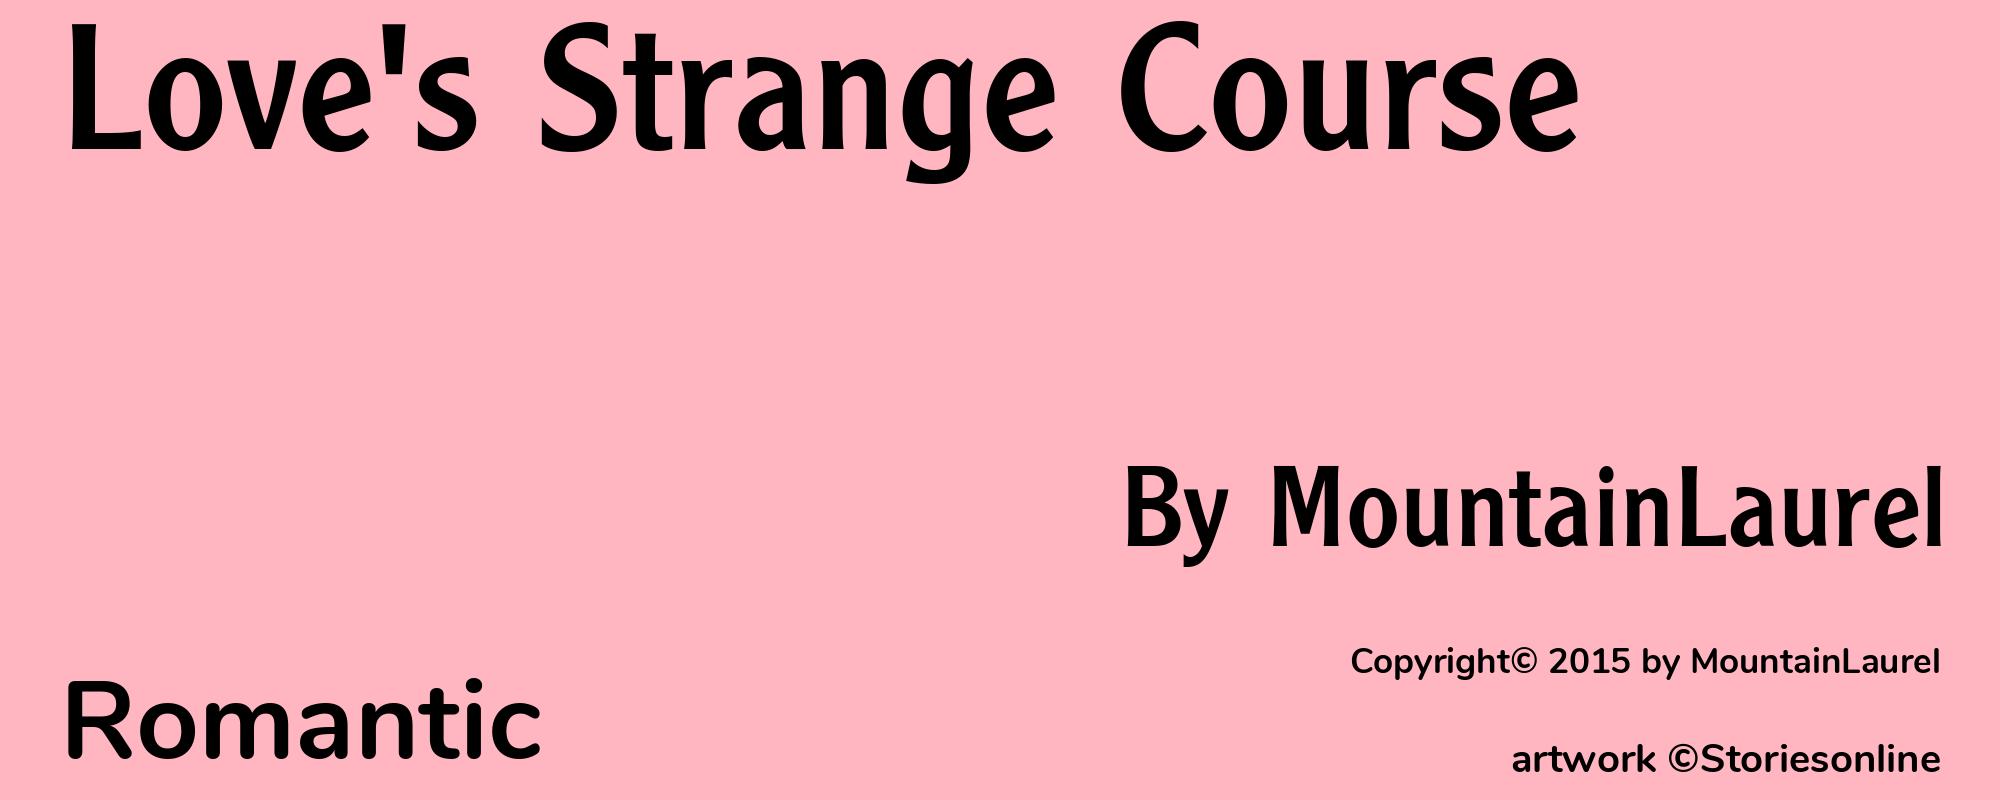 Love's Strange Course - Cover